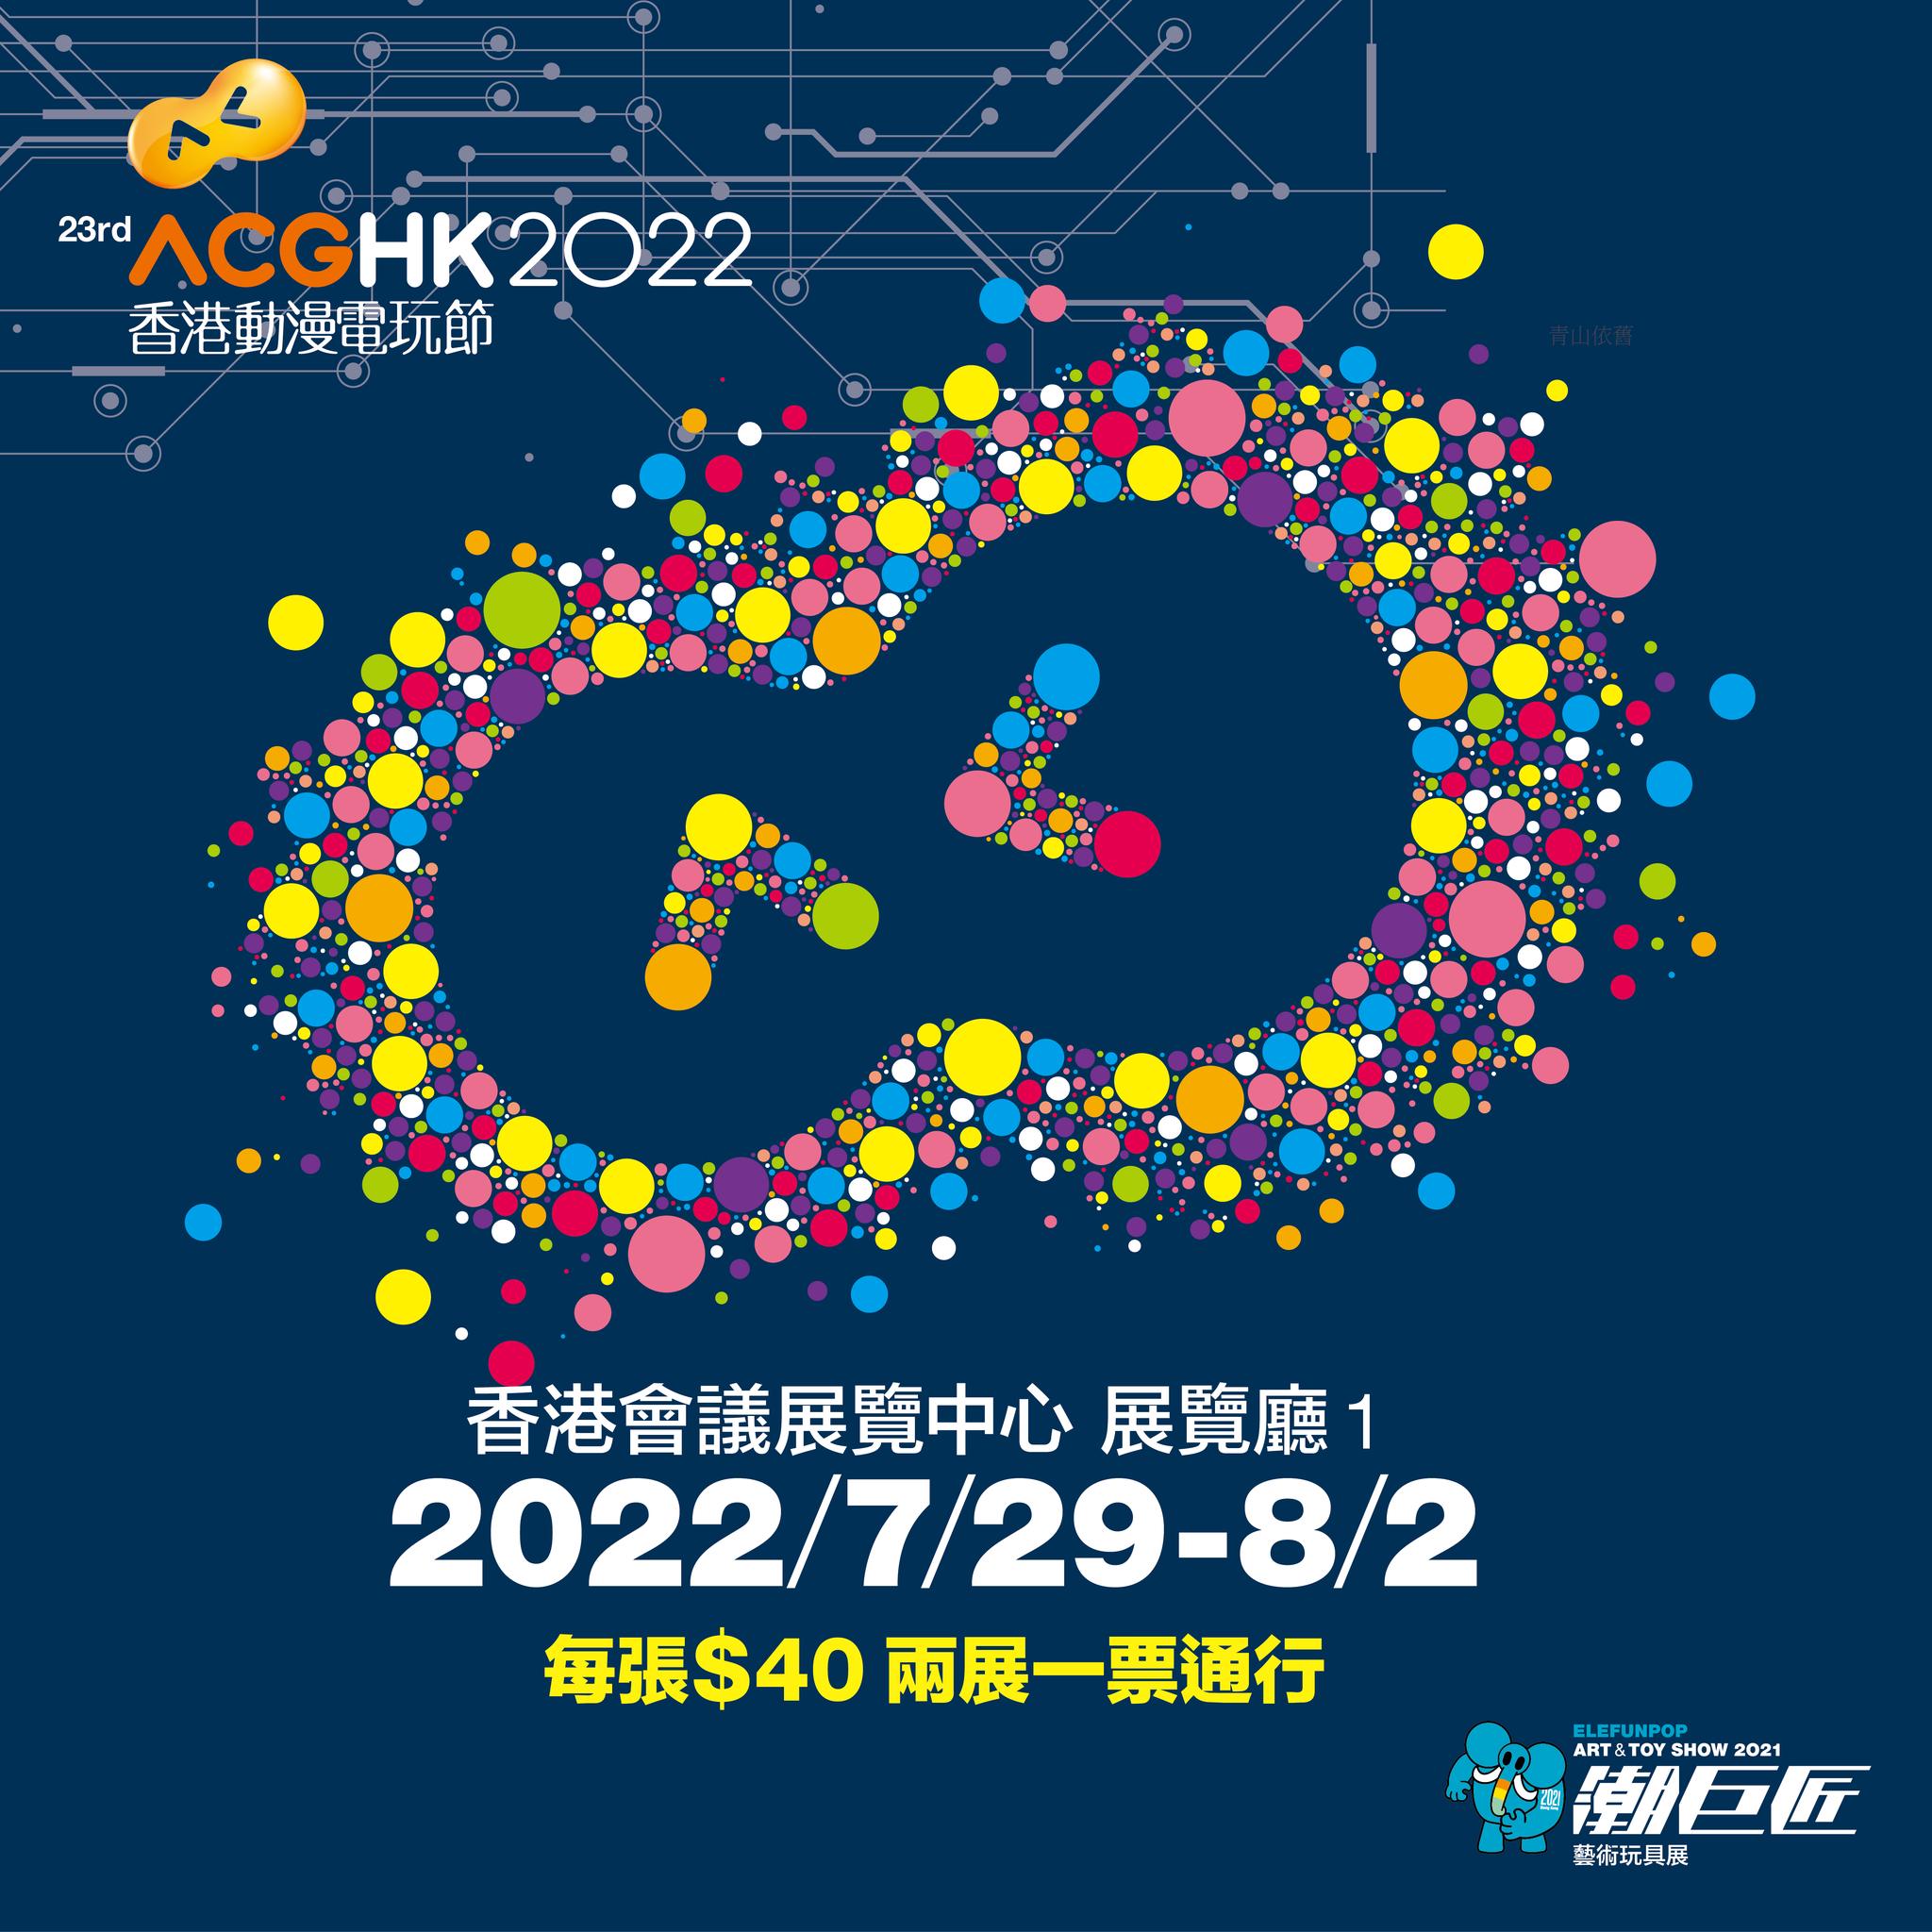 20220729-0802 香港動漫電玩節 @ 香港會議展覽中心